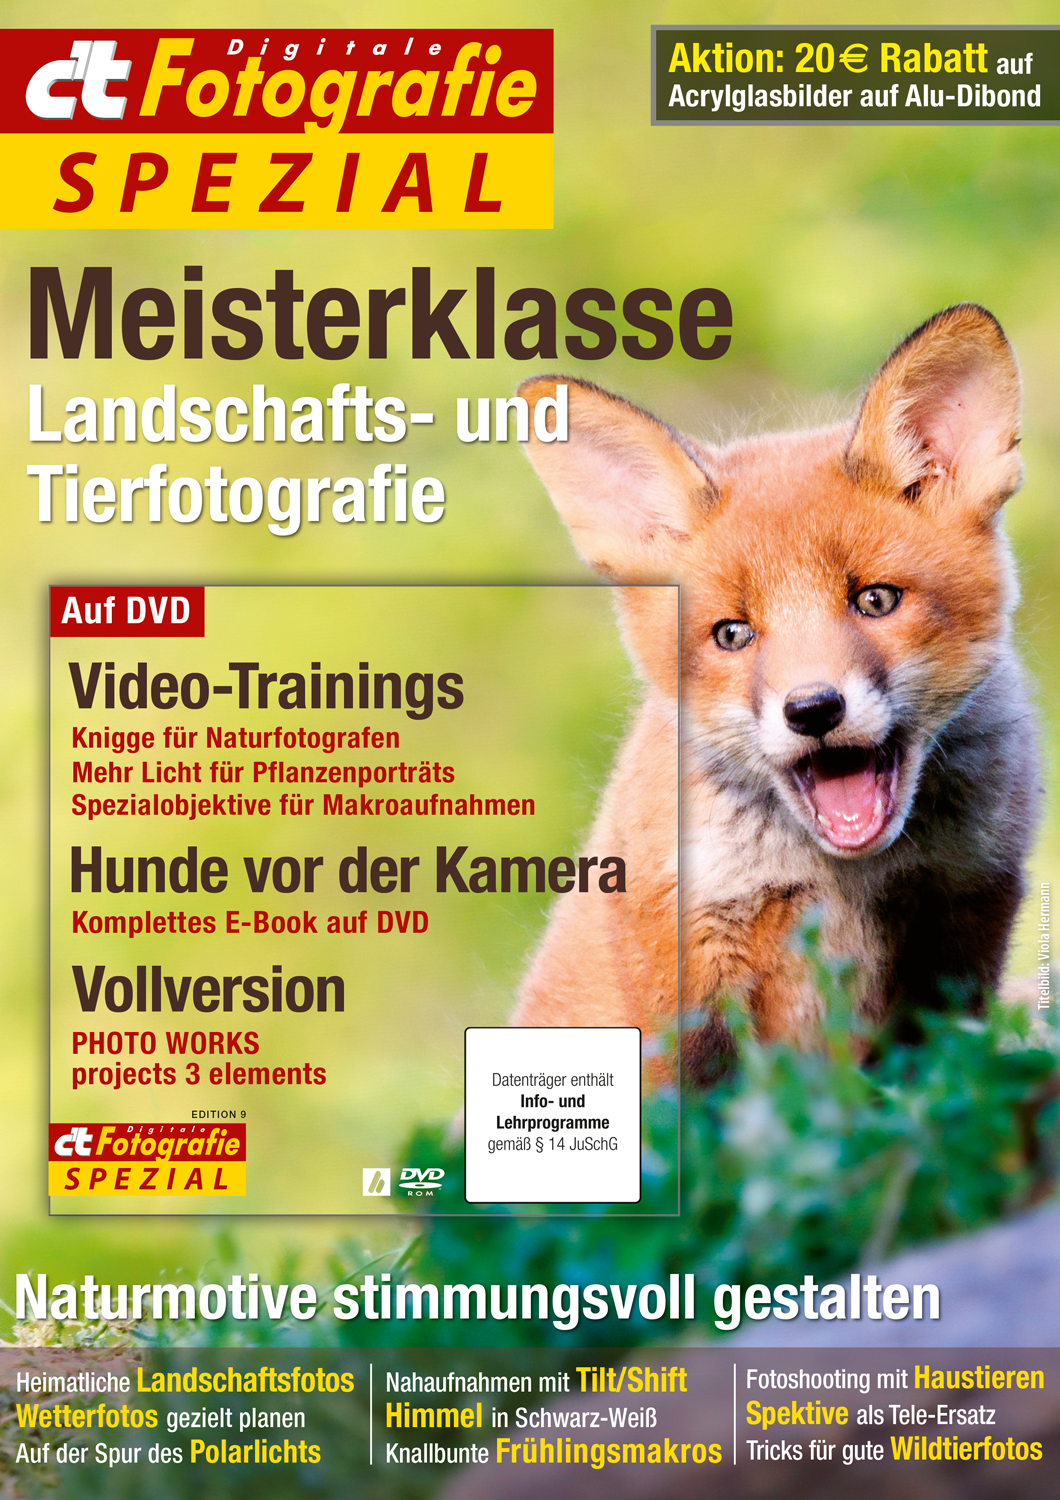 c't Fotografie Spezial: Meisterklasse Landschafts- und Tierfotografie